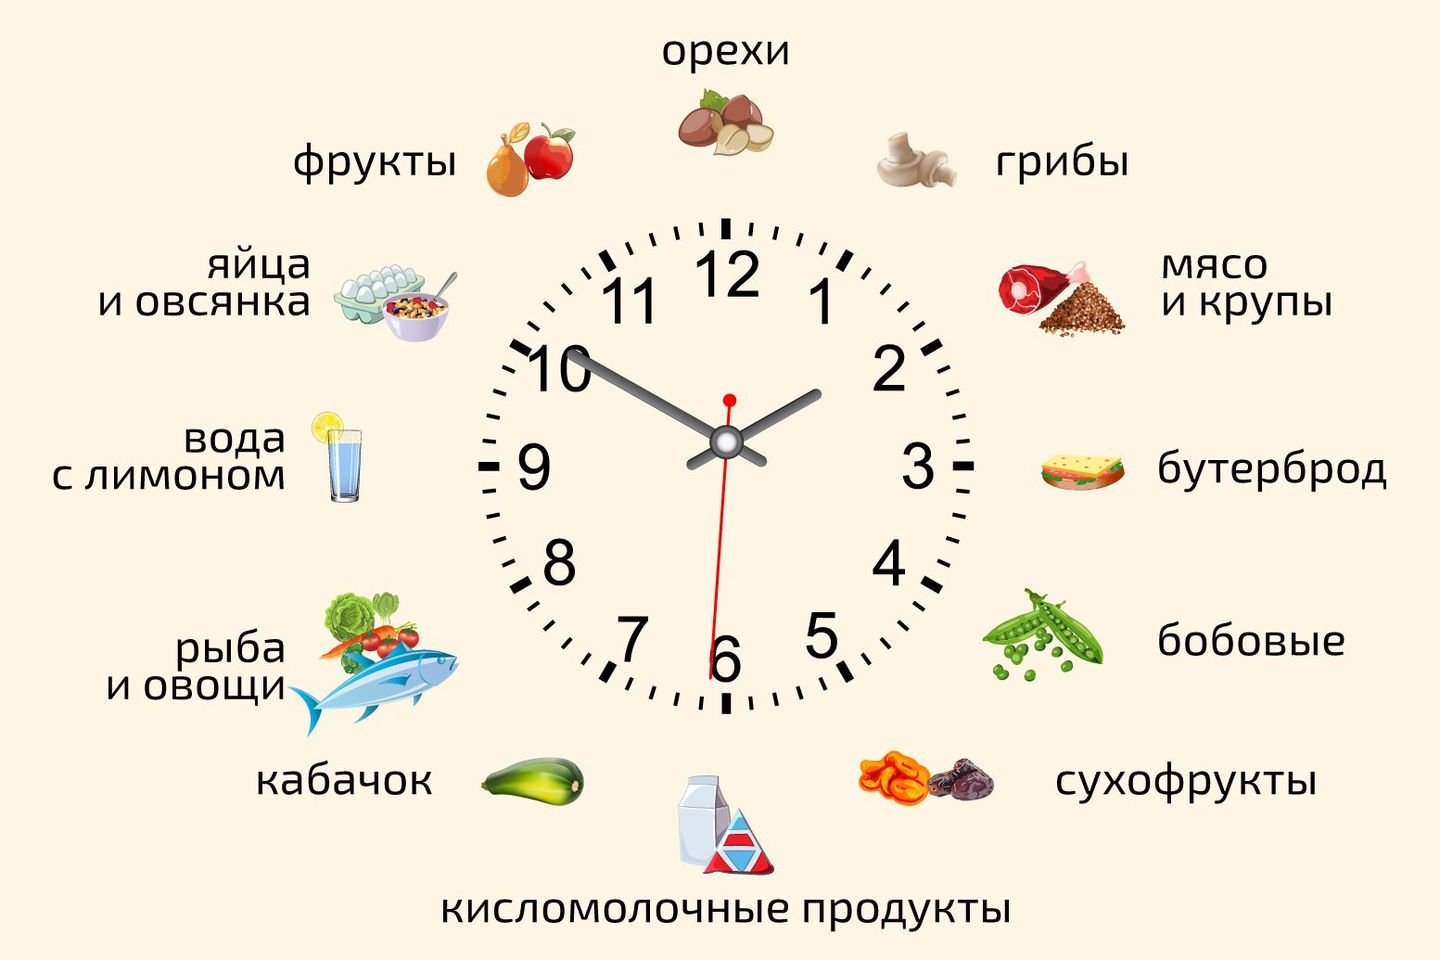 До скольки употребление. Какие продукты в какое время есть. Какие продукты нужно есть в Разное время суток. Какие продукты есть в какое время суток. Какие продукты нужно употреблять в какое время суток.